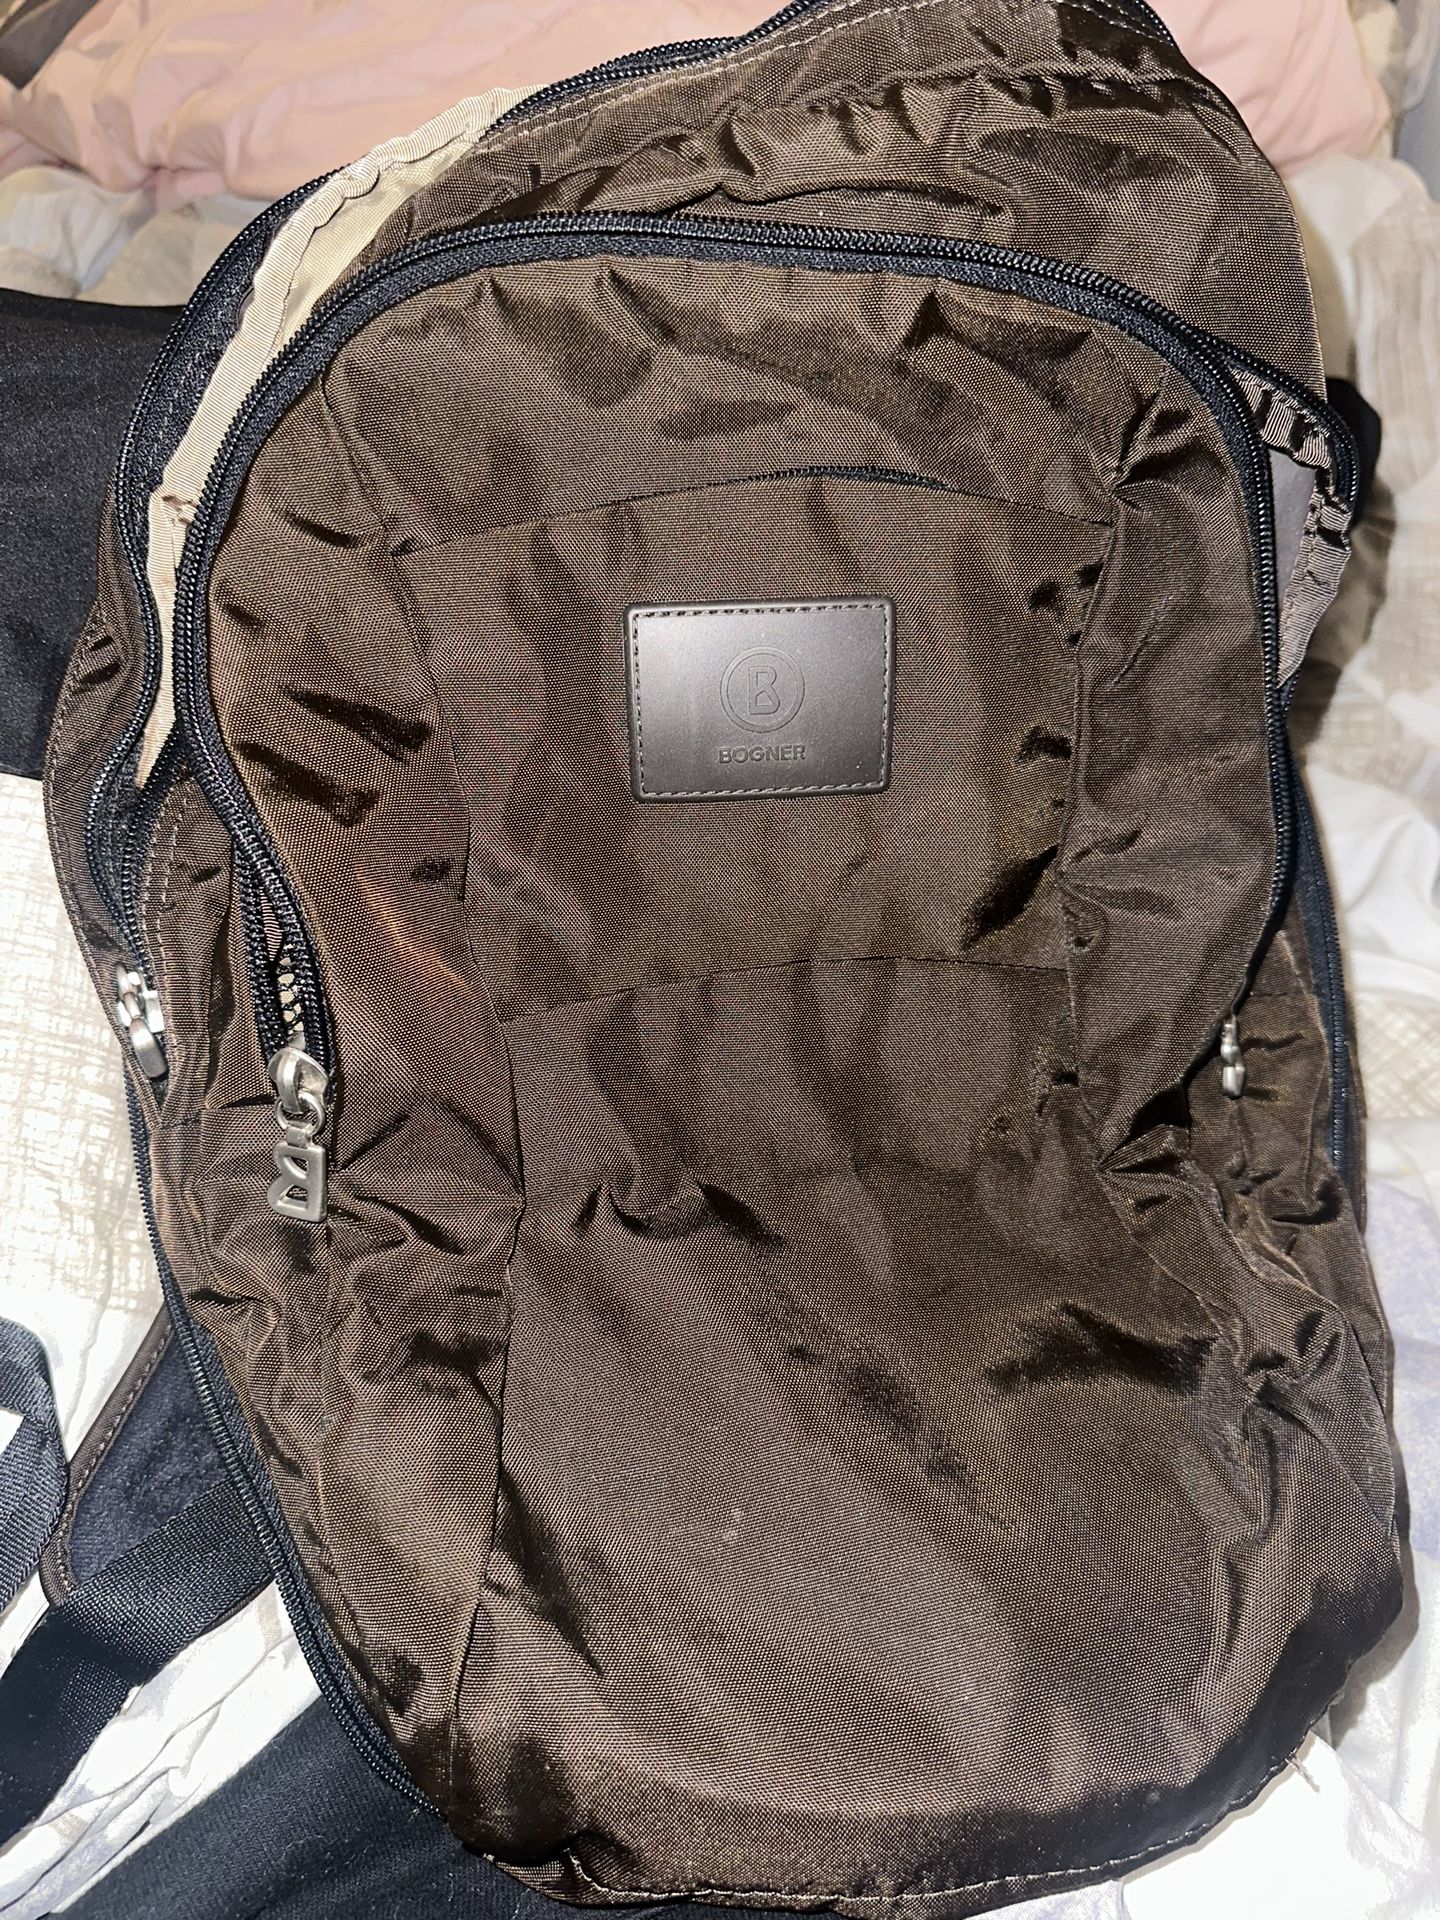 Bognor backpack